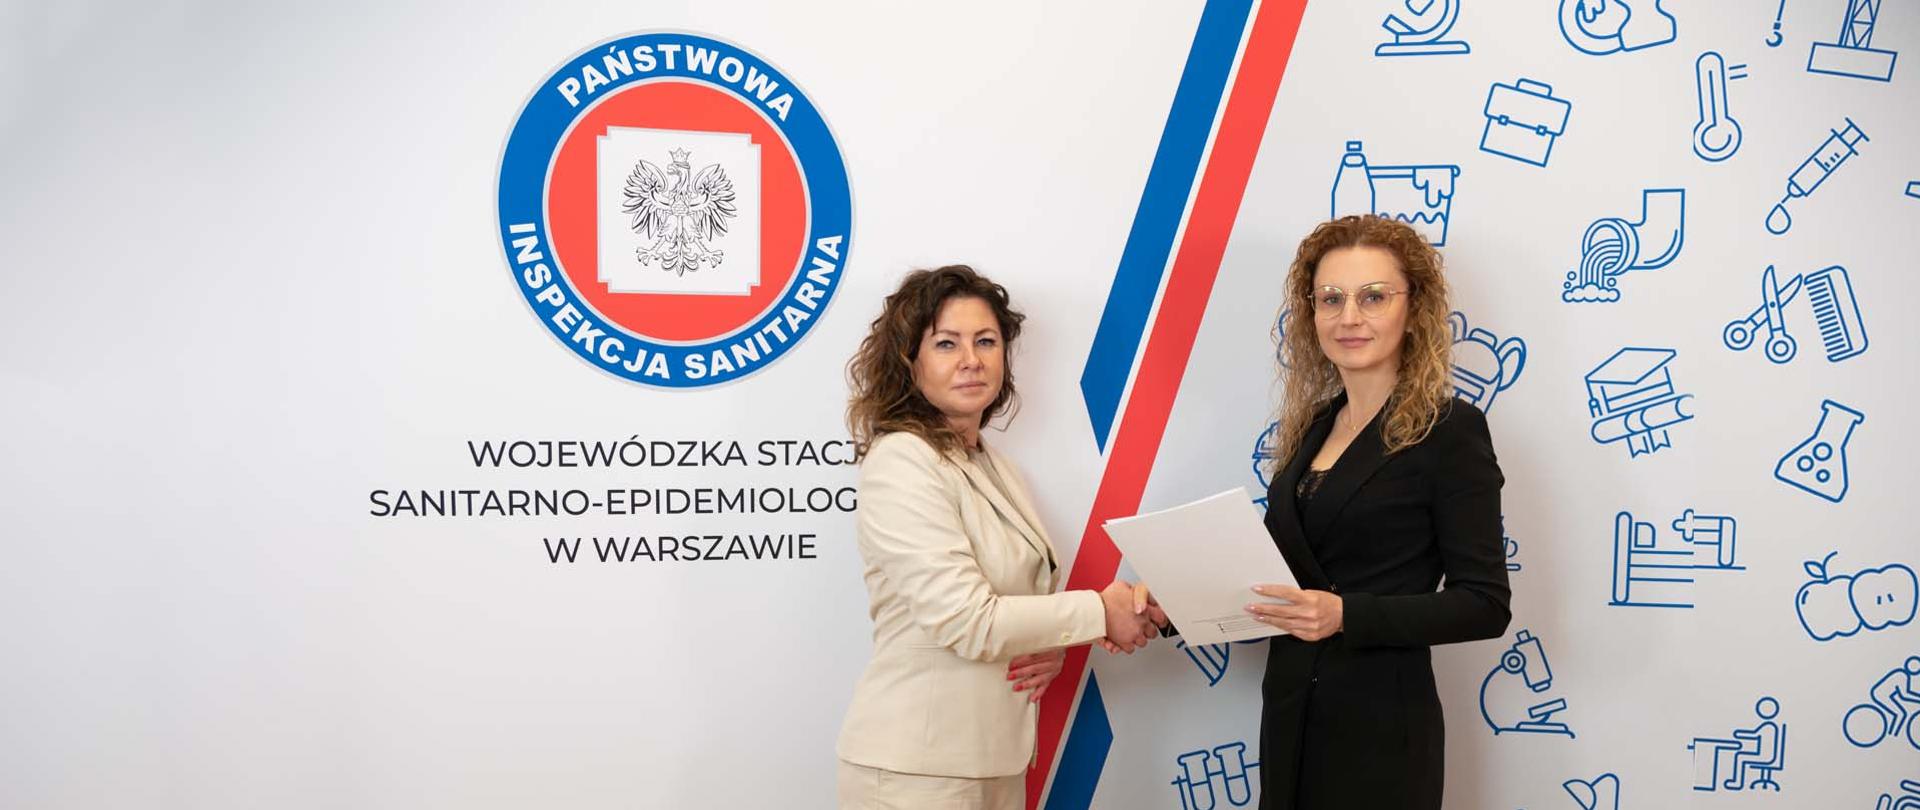 Pani Sylwia Patejuk przyjmuje nominację z rąk Pani Magdaleny Kaczmarek, Mazowieckiego Państwowego Wojewódzkiego Inspektora Sanitarnego